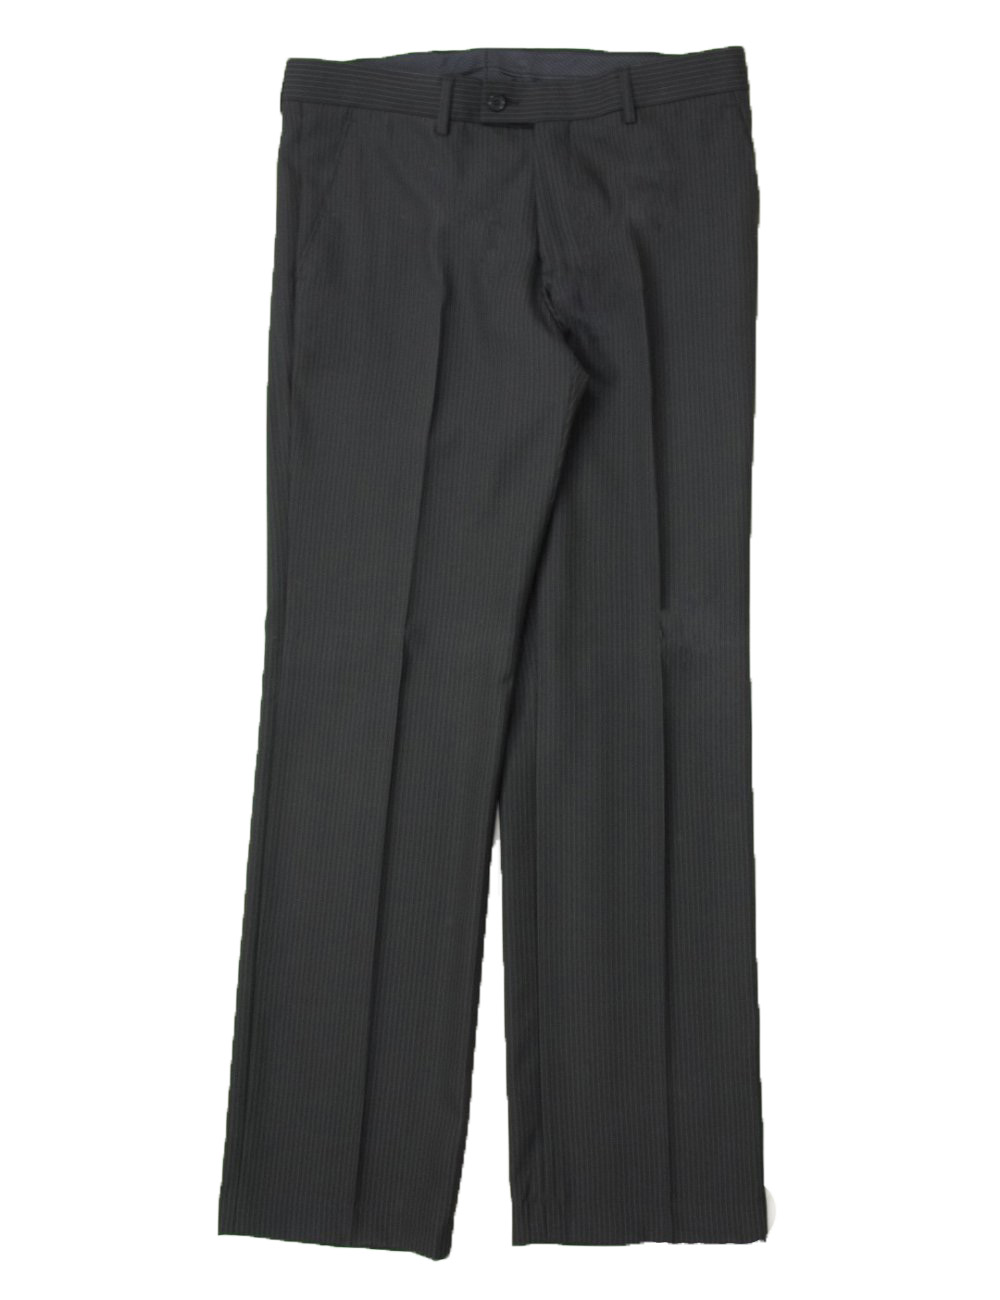 Ανδρικό μαύρο υφασμάτινο παντελόνι ρίγες 400999